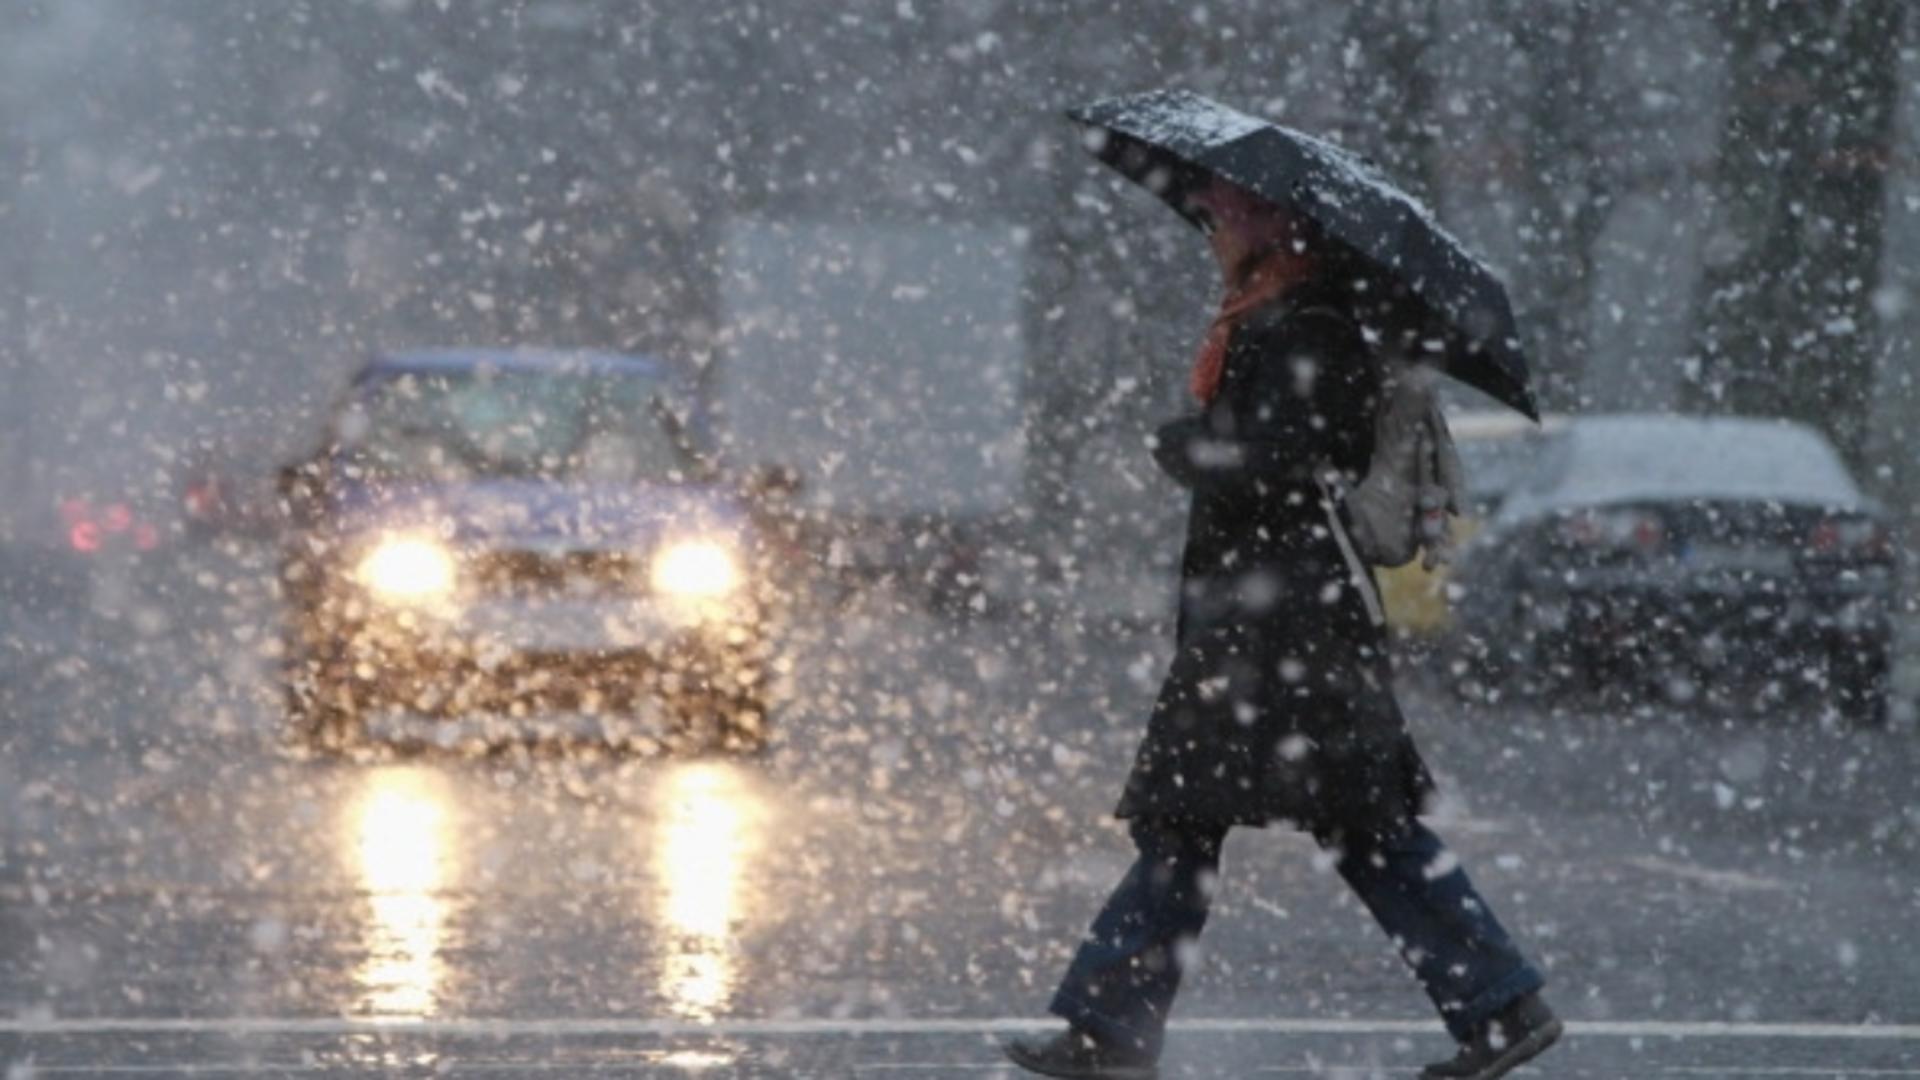 ALERTĂ meteo în 3 județe din centrul și estul României - Cod galben de ploi, lapoviță, ninsoare și polei